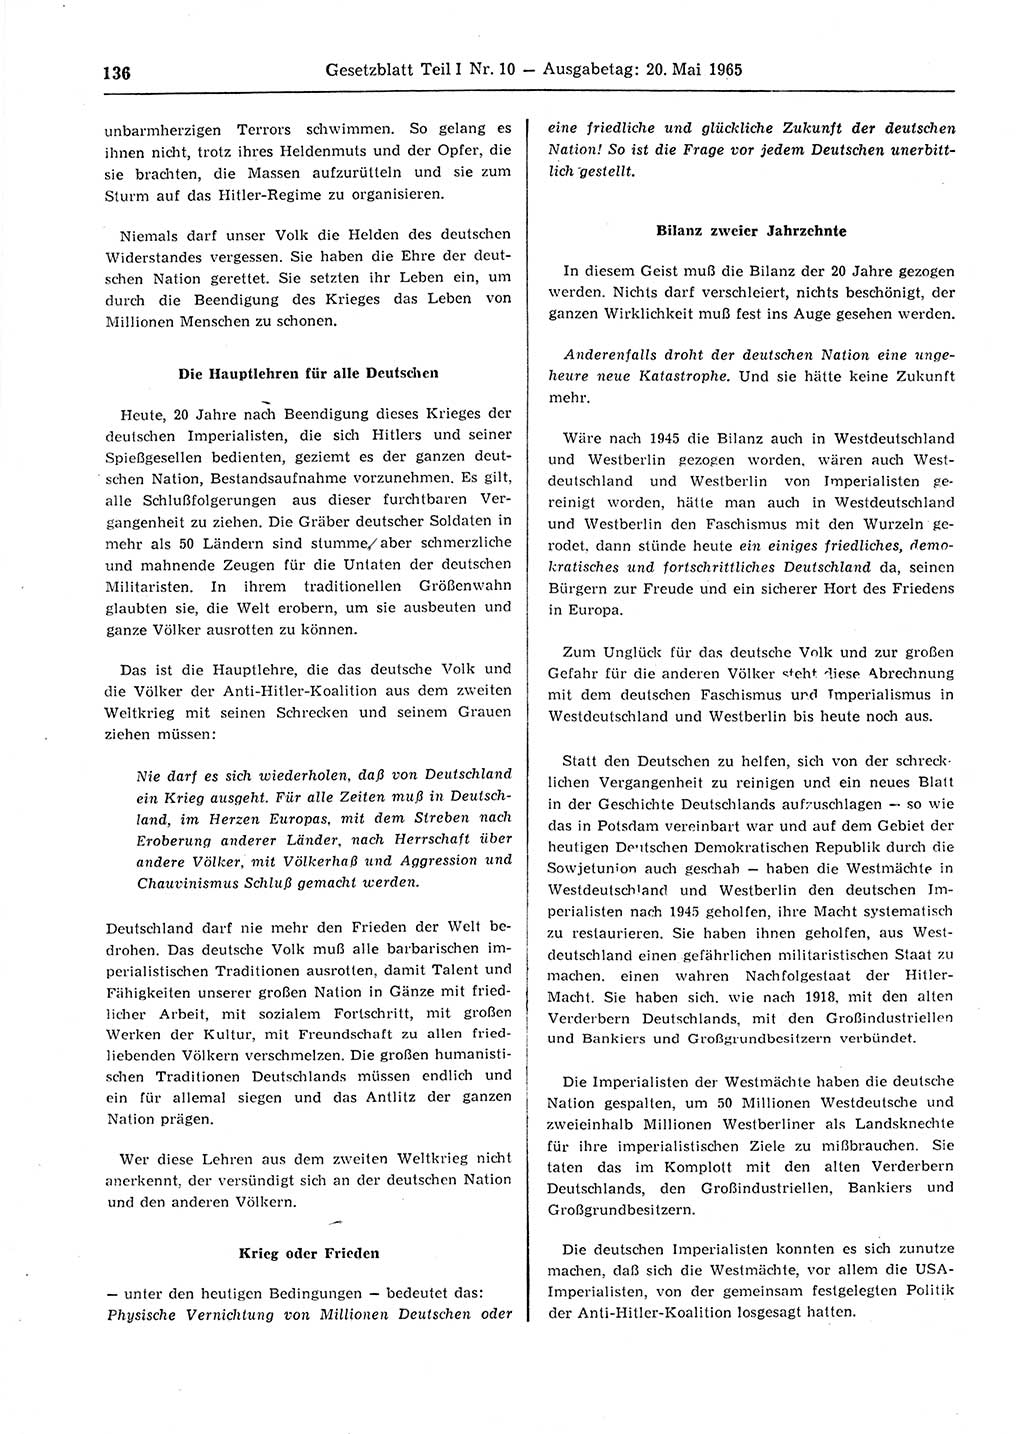 Gesetzblatt (GBl.) der Deutschen Demokratischen Republik (DDR) Teil Ⅰ 1965, Seite 136 (GBl. DDR Ⅰ 1965, S. 136)